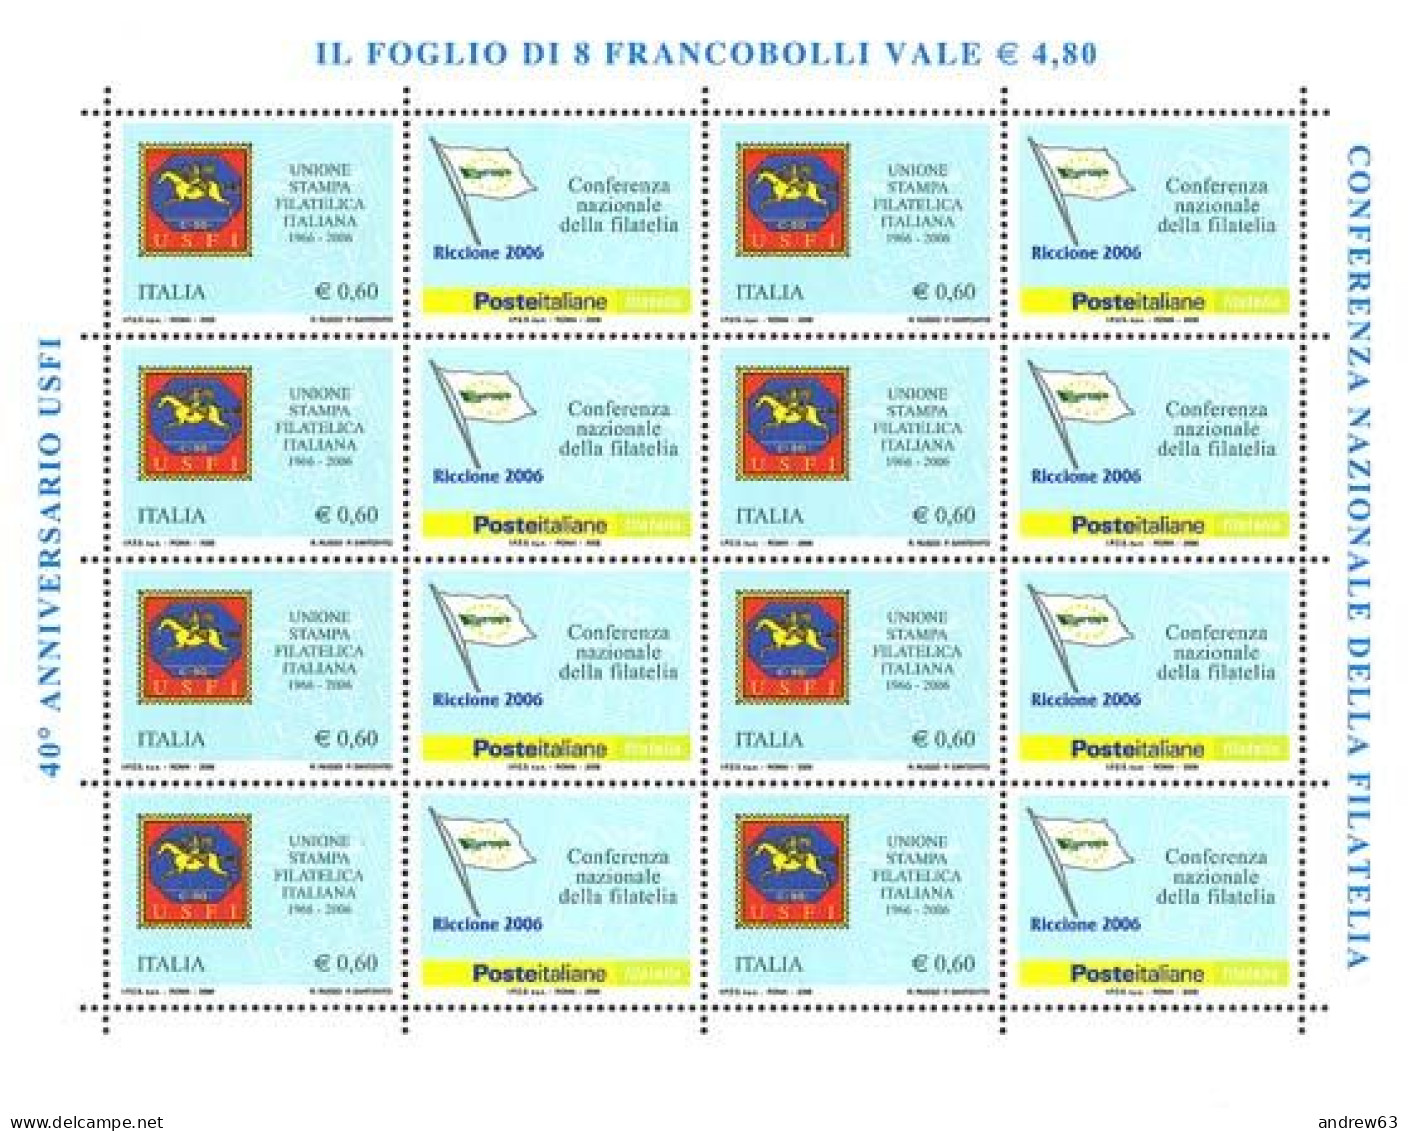 ITALIA - REPUBBLICA ITALIANA - 2006 - 0,60€ USFI - Minifoglio Da 8 Francobolli - MNH - Full Sheets